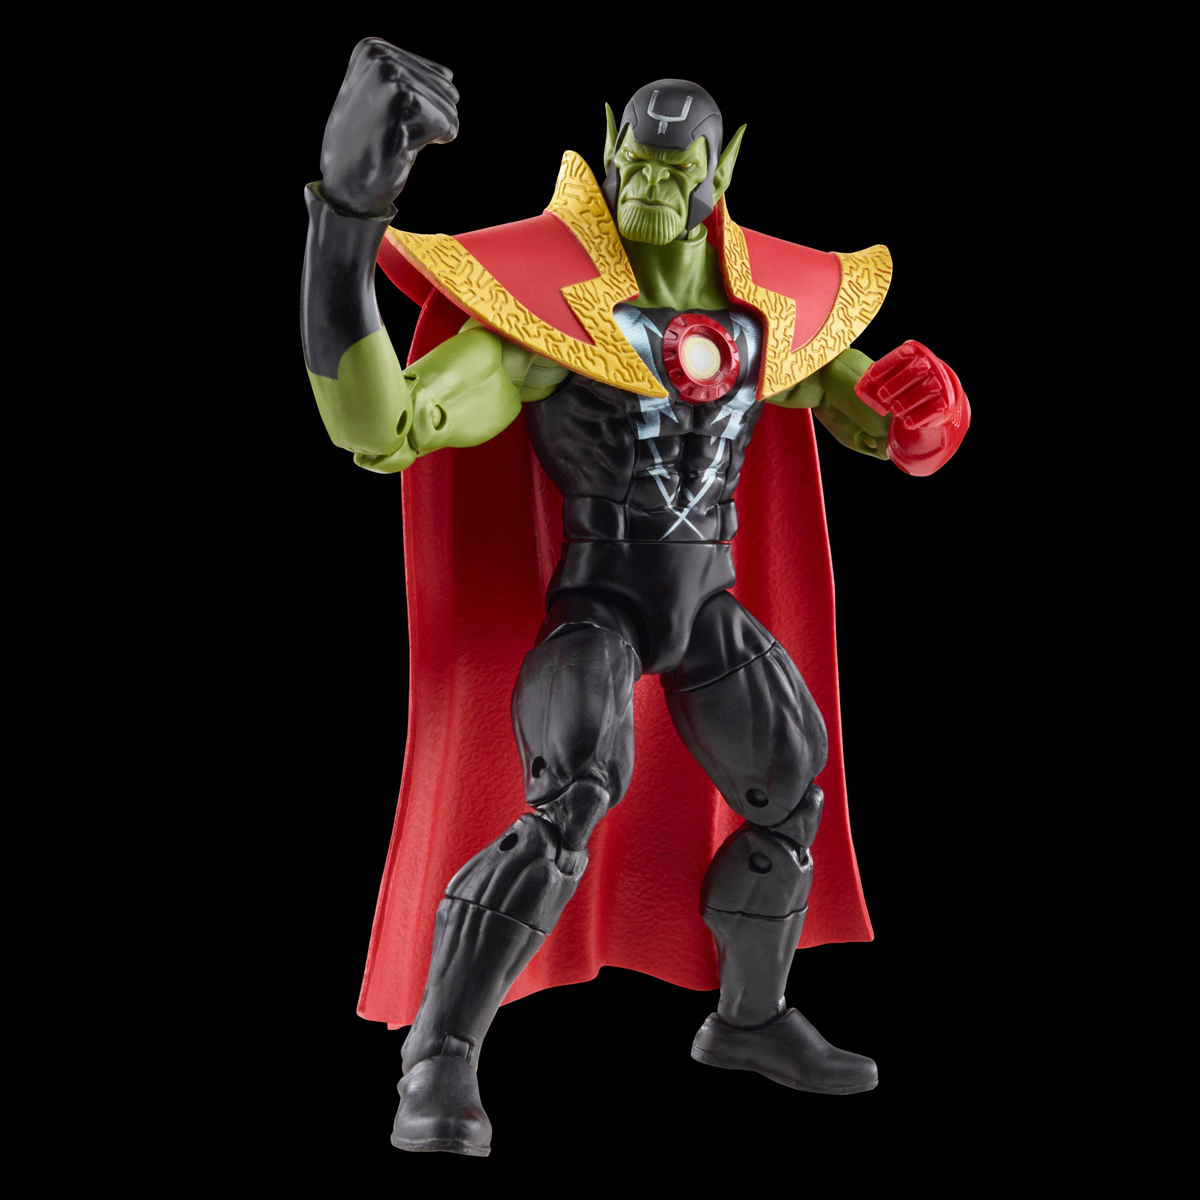 Marvel-Legends-Skrull-Queen-and-Super-Skrull-Action-Figures-18